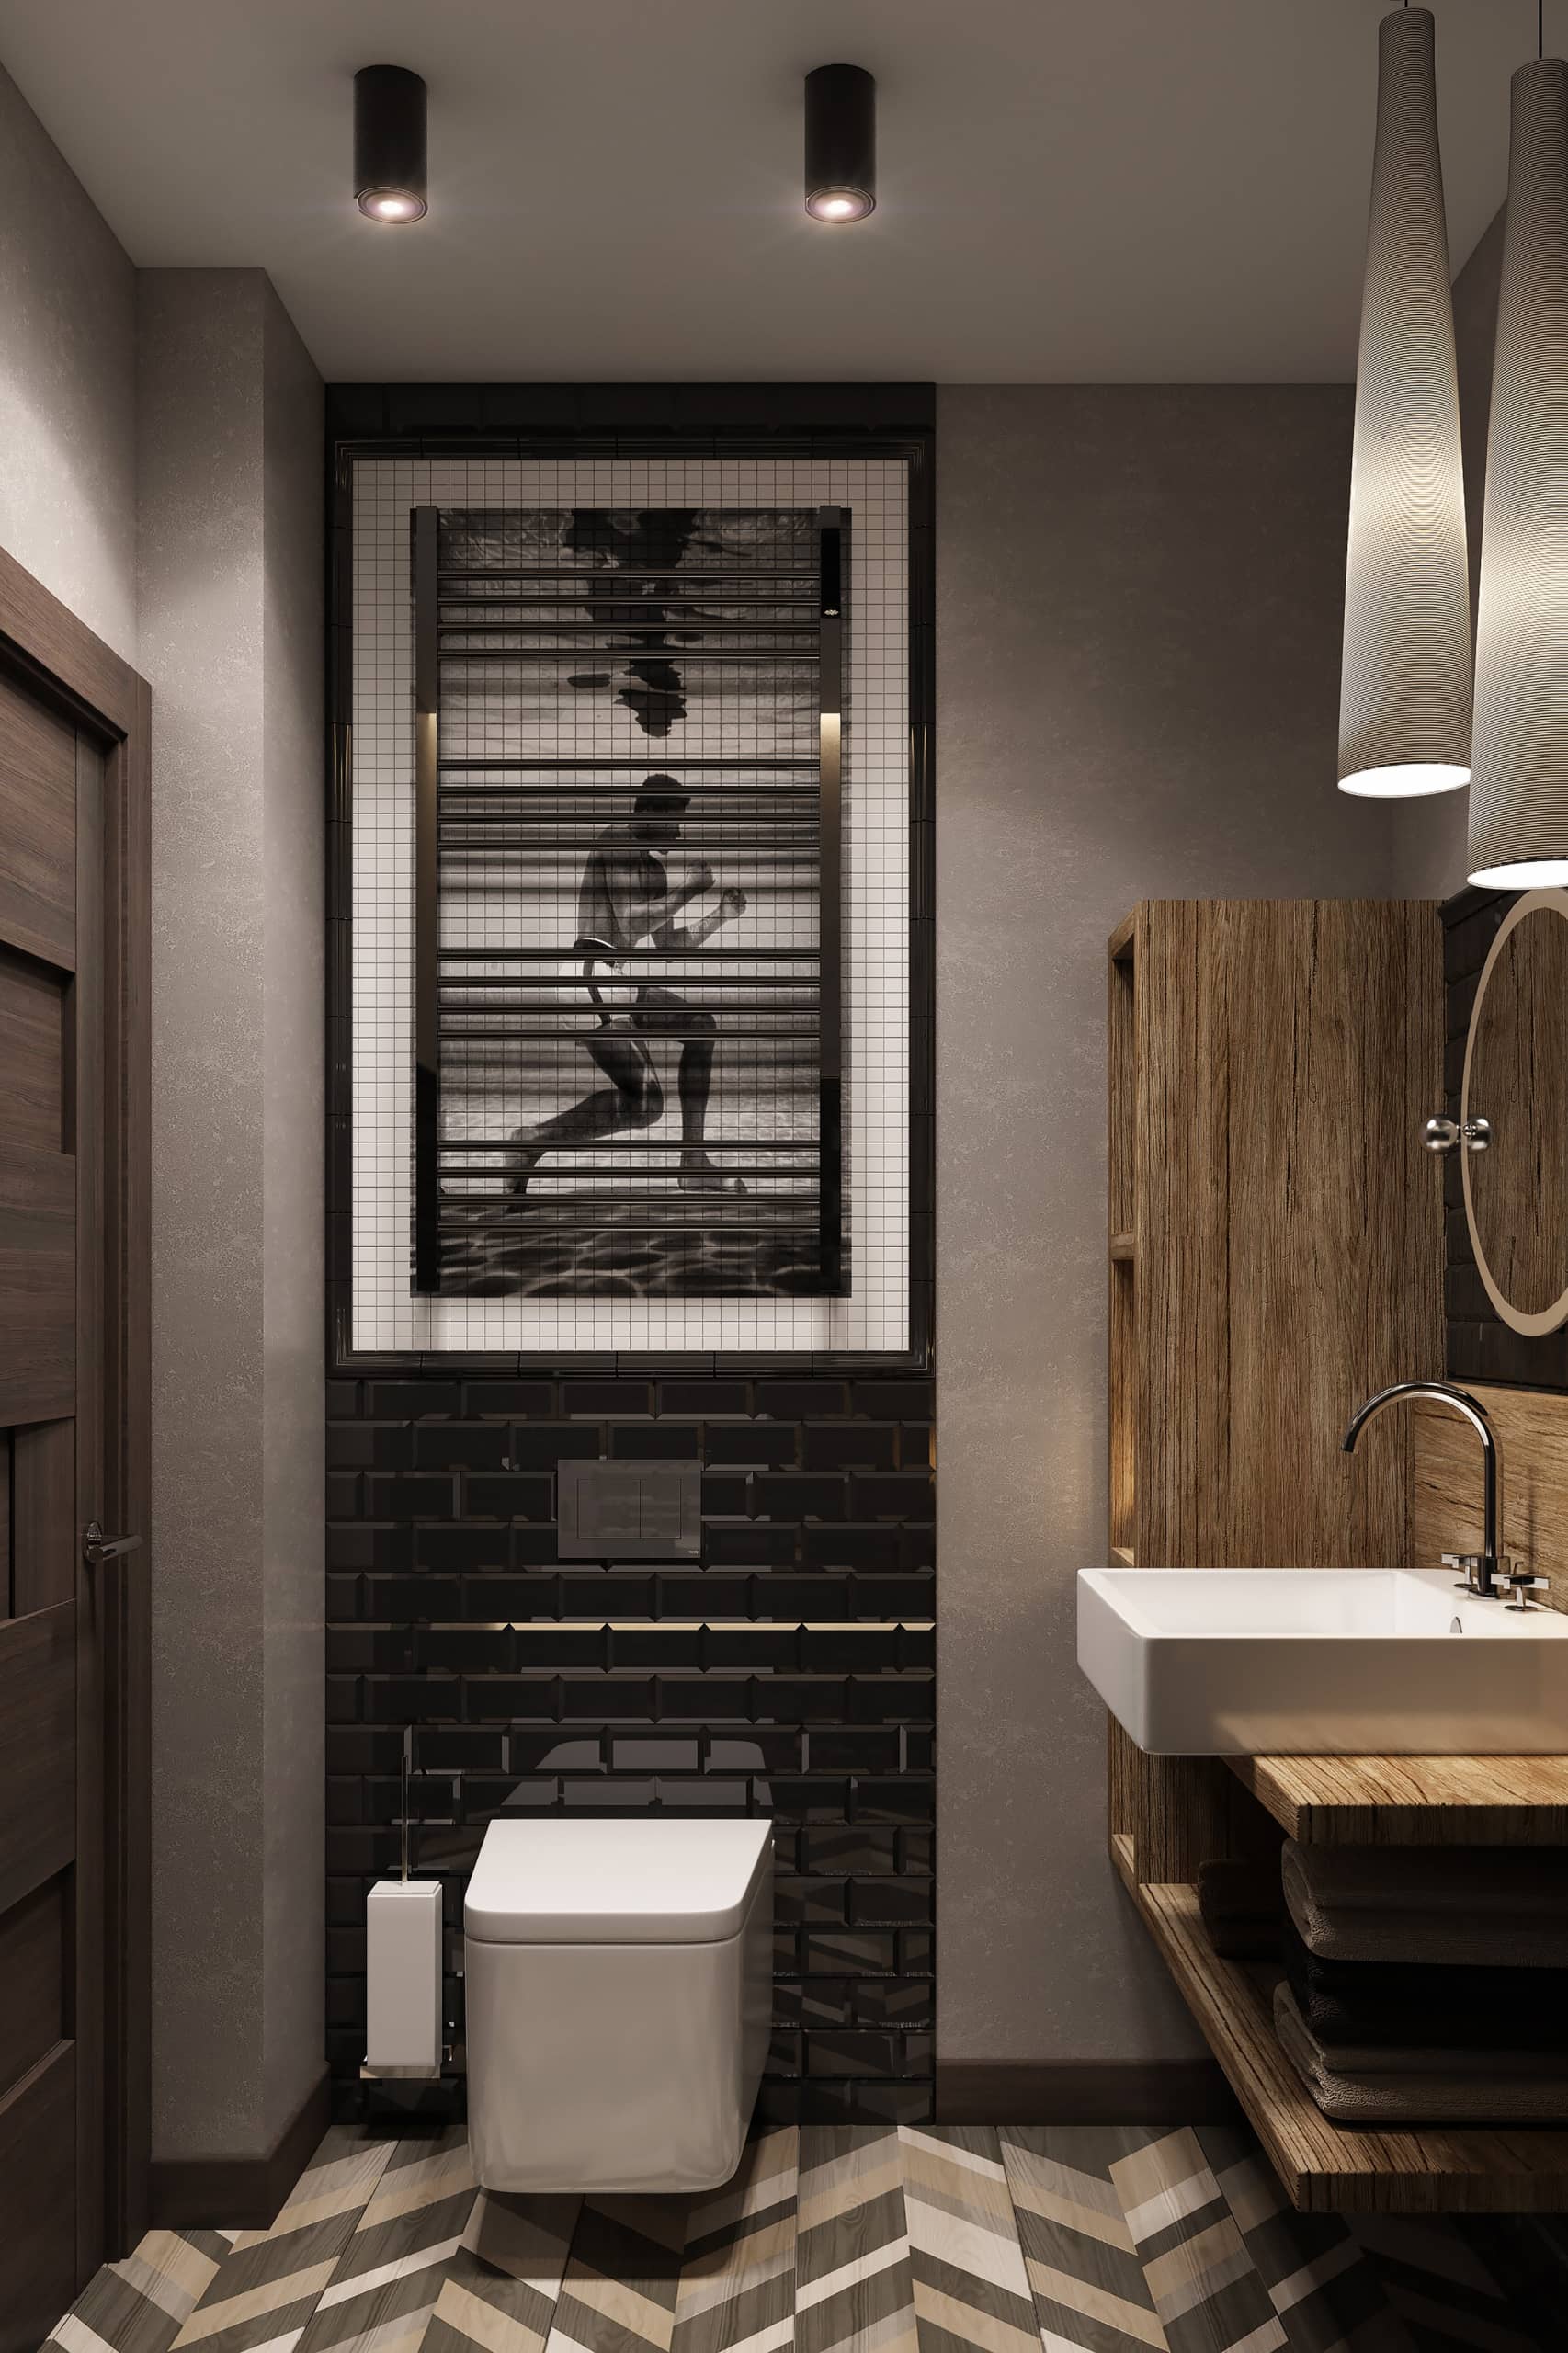 Чёрно-белая мозаика в виде боксёра для современной ванной комнаты